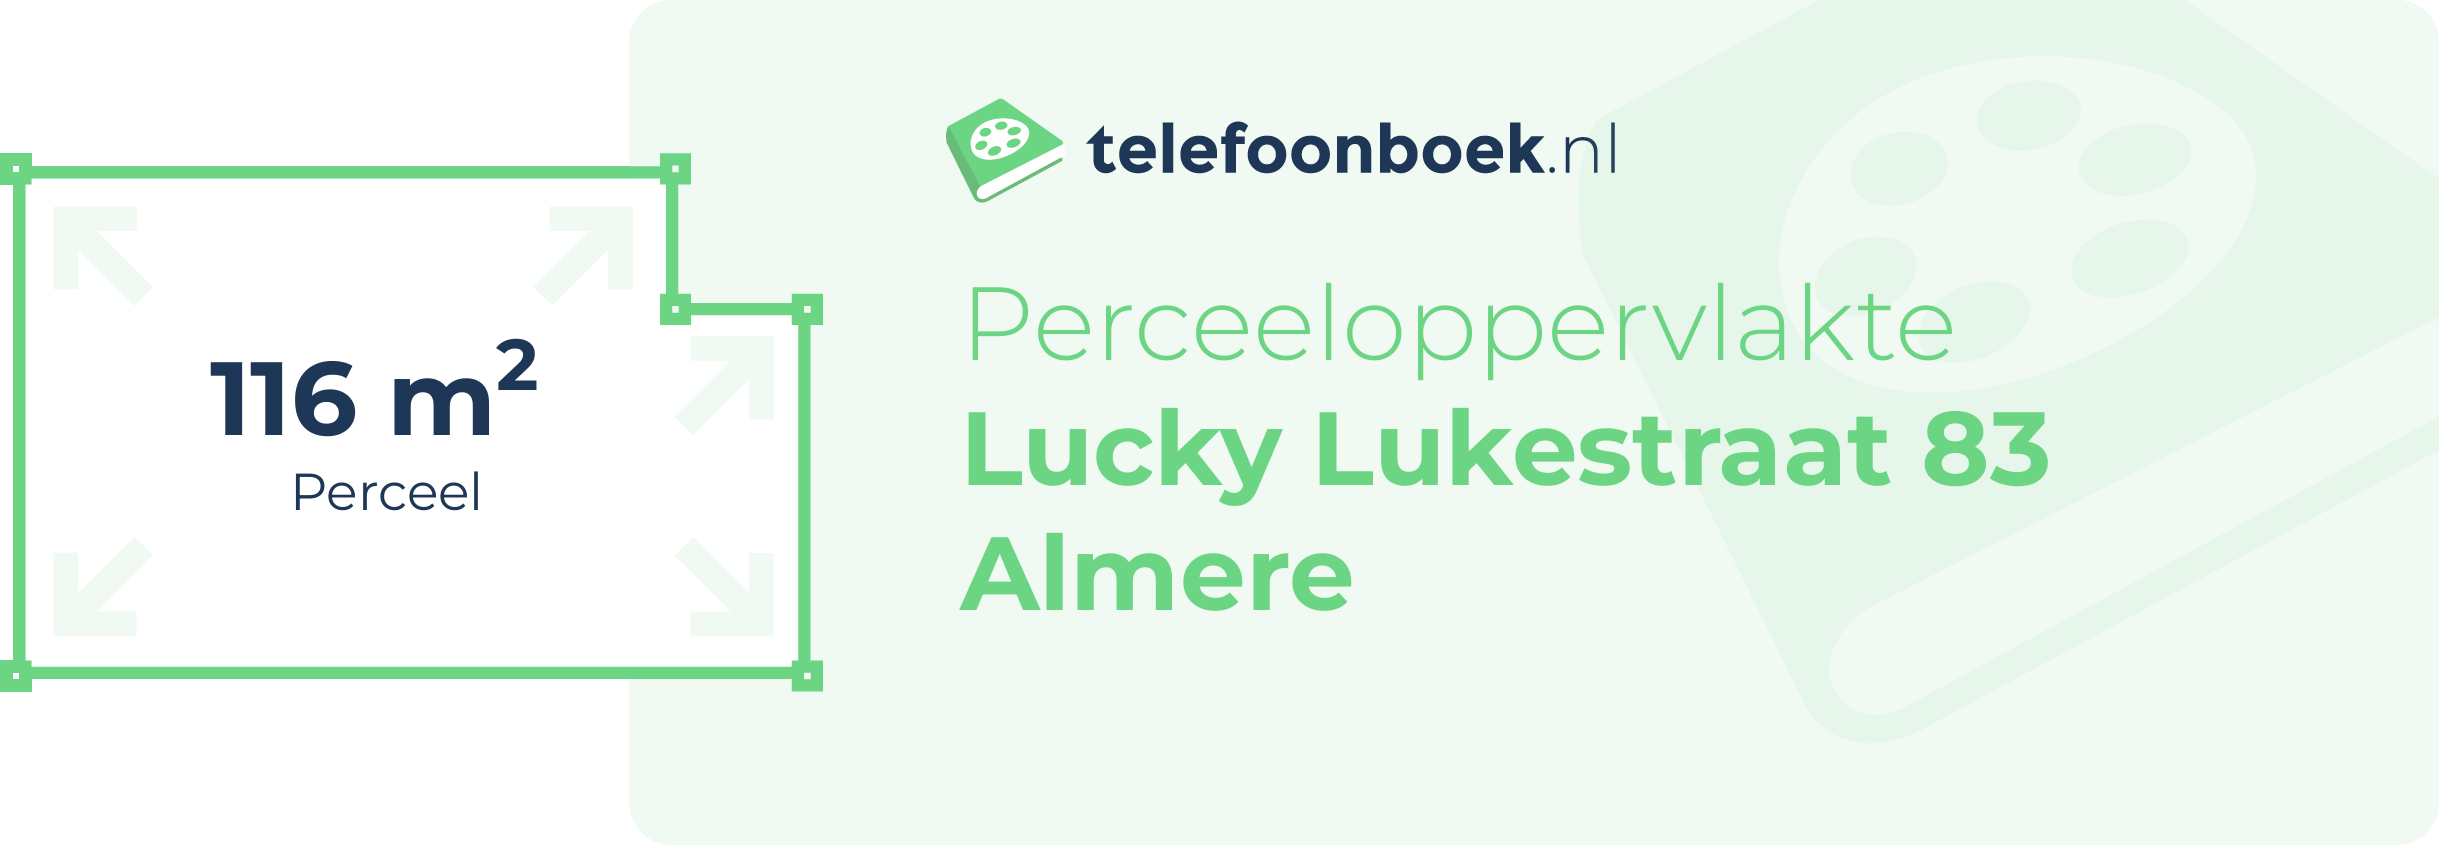 Perceeloppervlakte Lucky Lukestraat 83 Almere